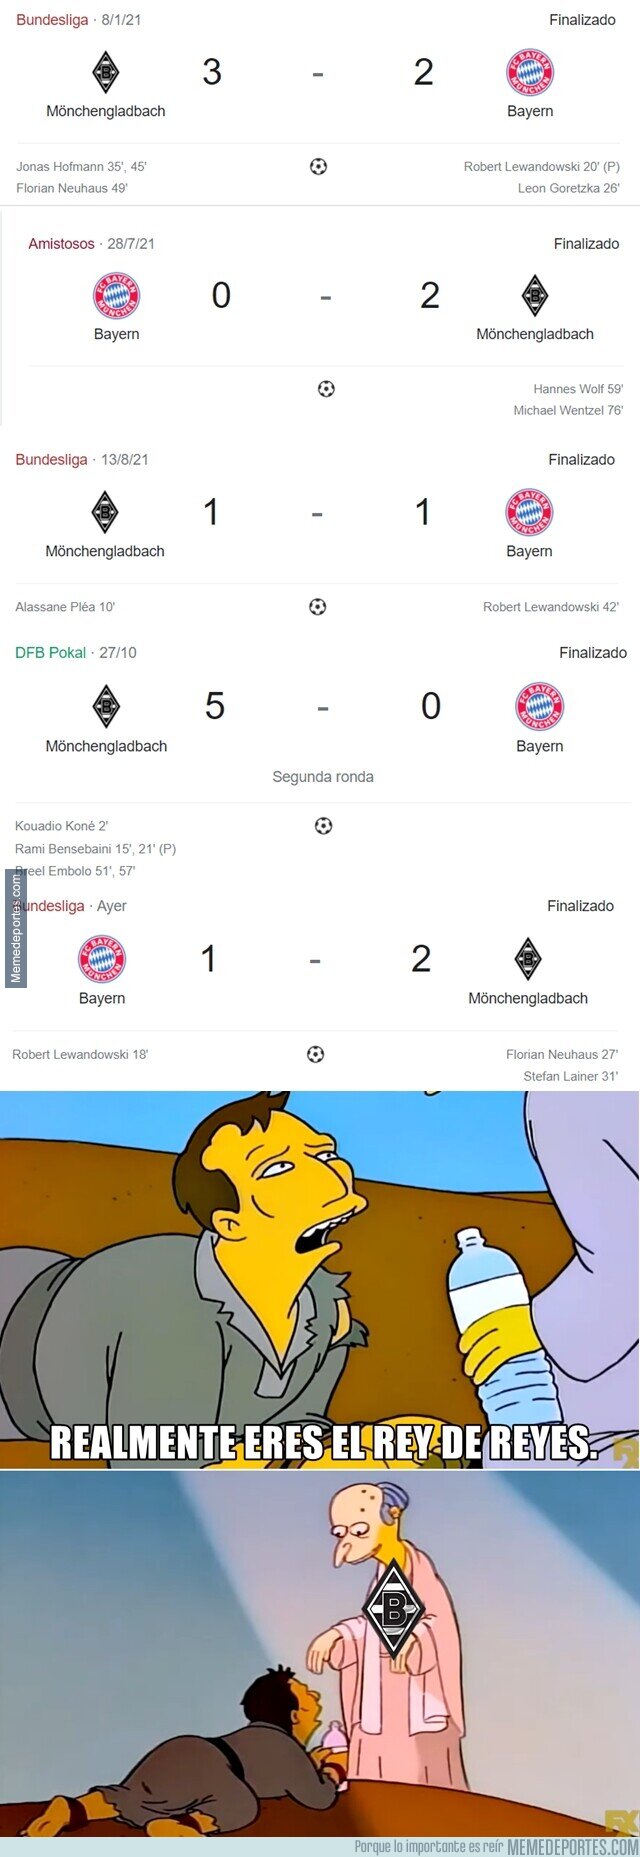 1152605 - 5 de los últimos 6 enfrentamientos contra el Bayern. Borussia Padrengladbach.